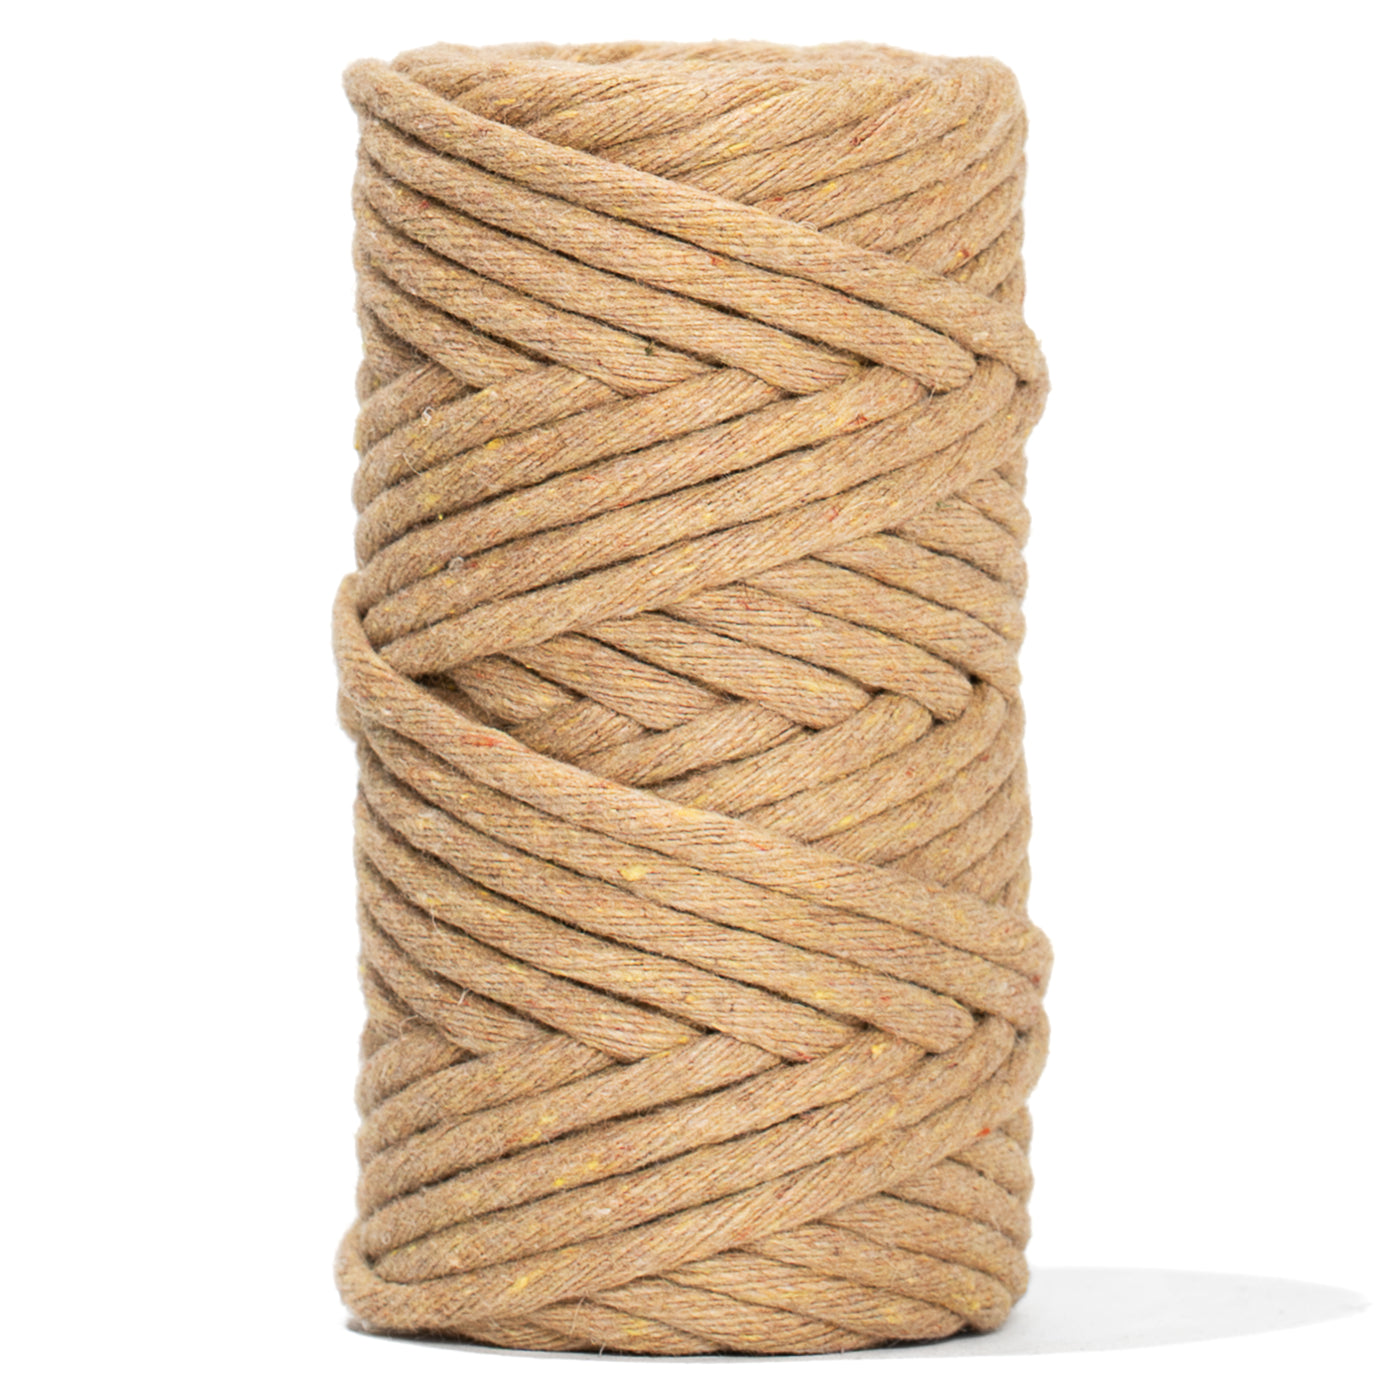 Soft Cotton Cords - Zero Waste - Single Strand 4 mm